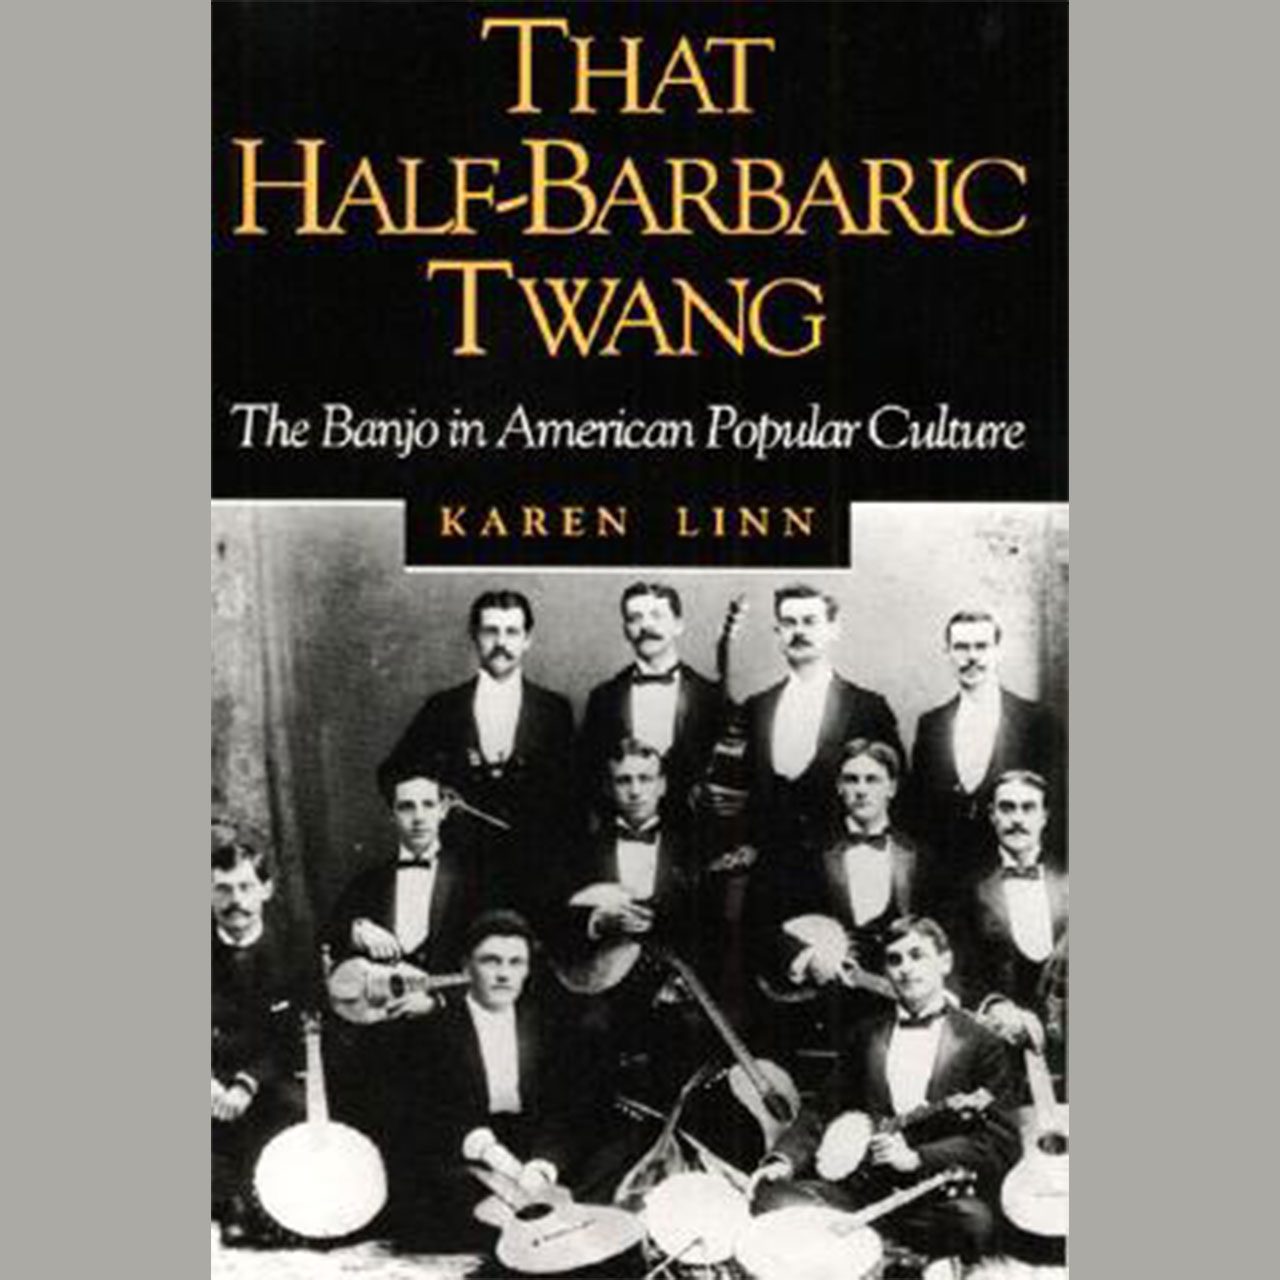 That Half-Barbaric Twang cover book